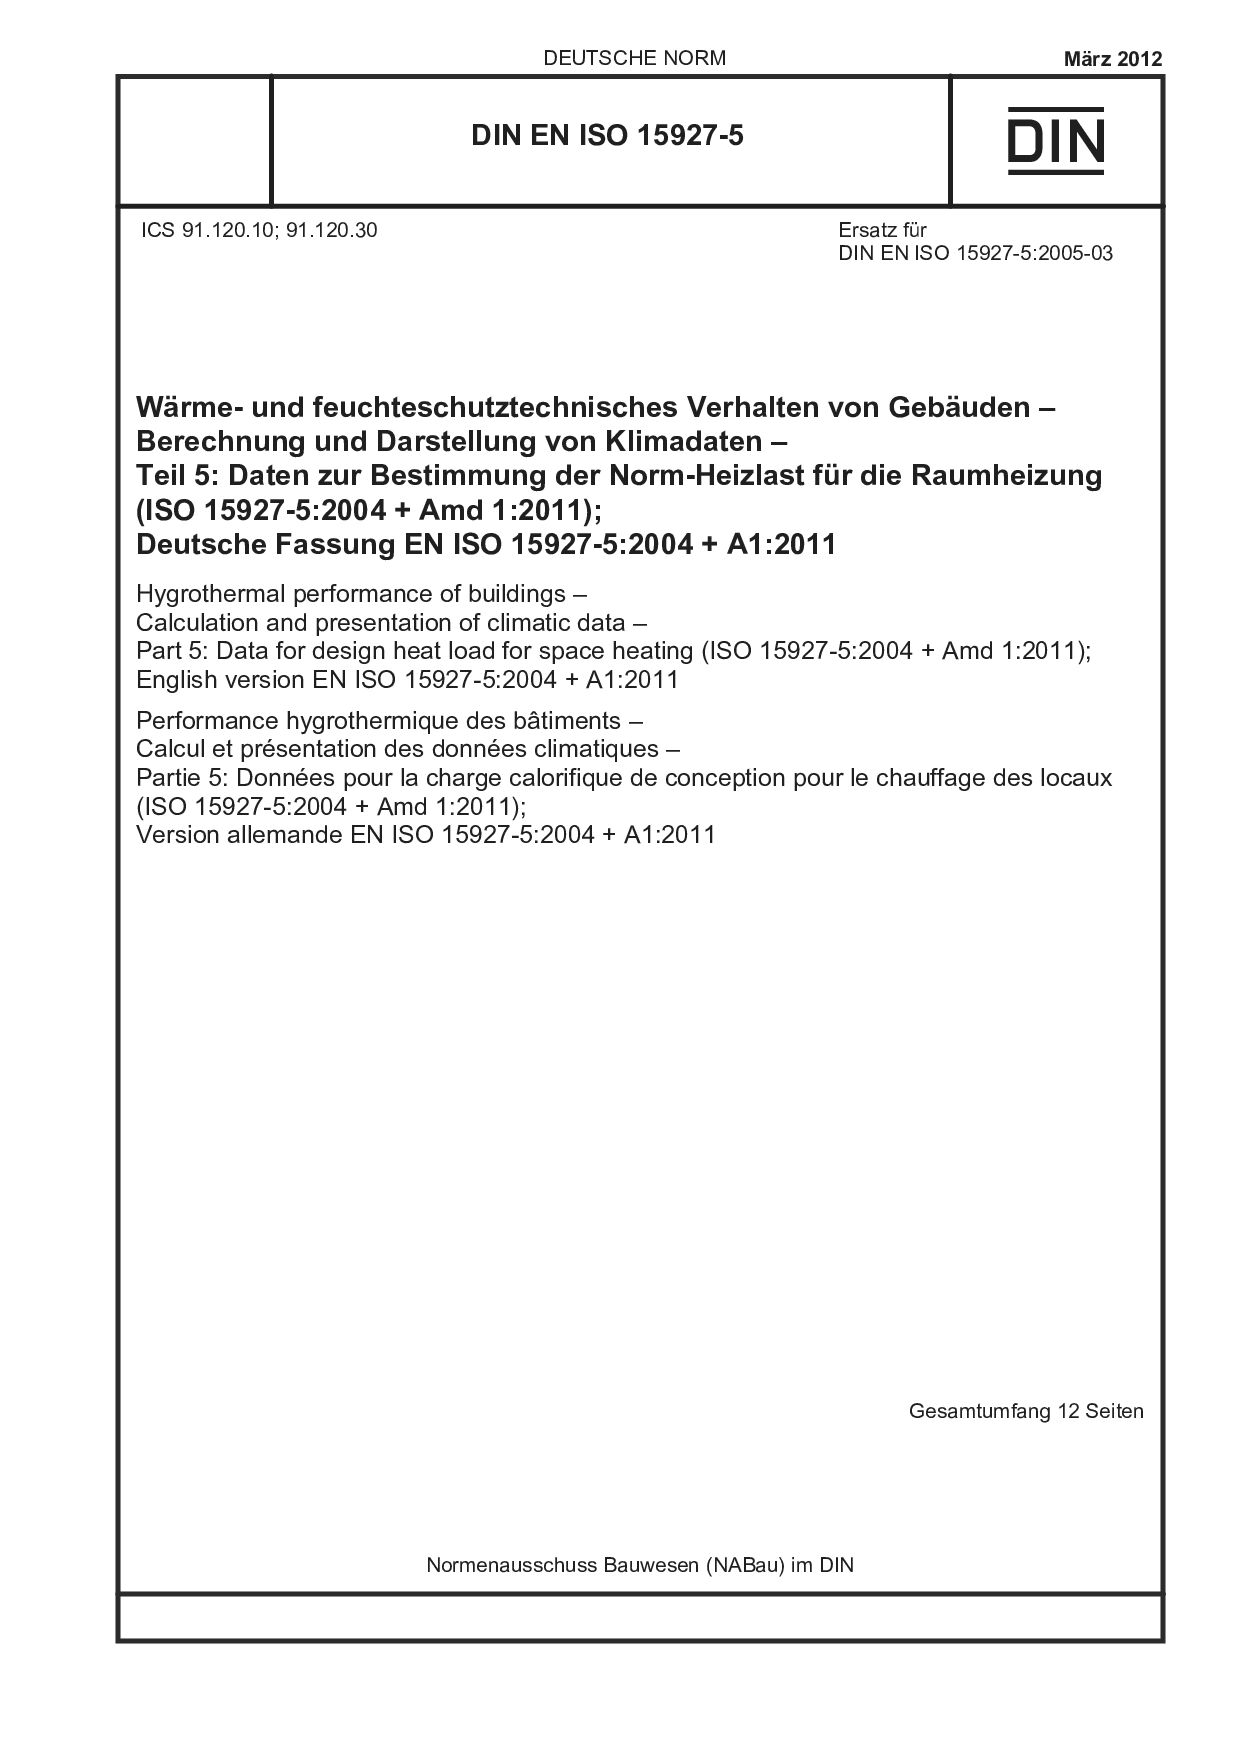 DIN EN ISO 15927-5:2012